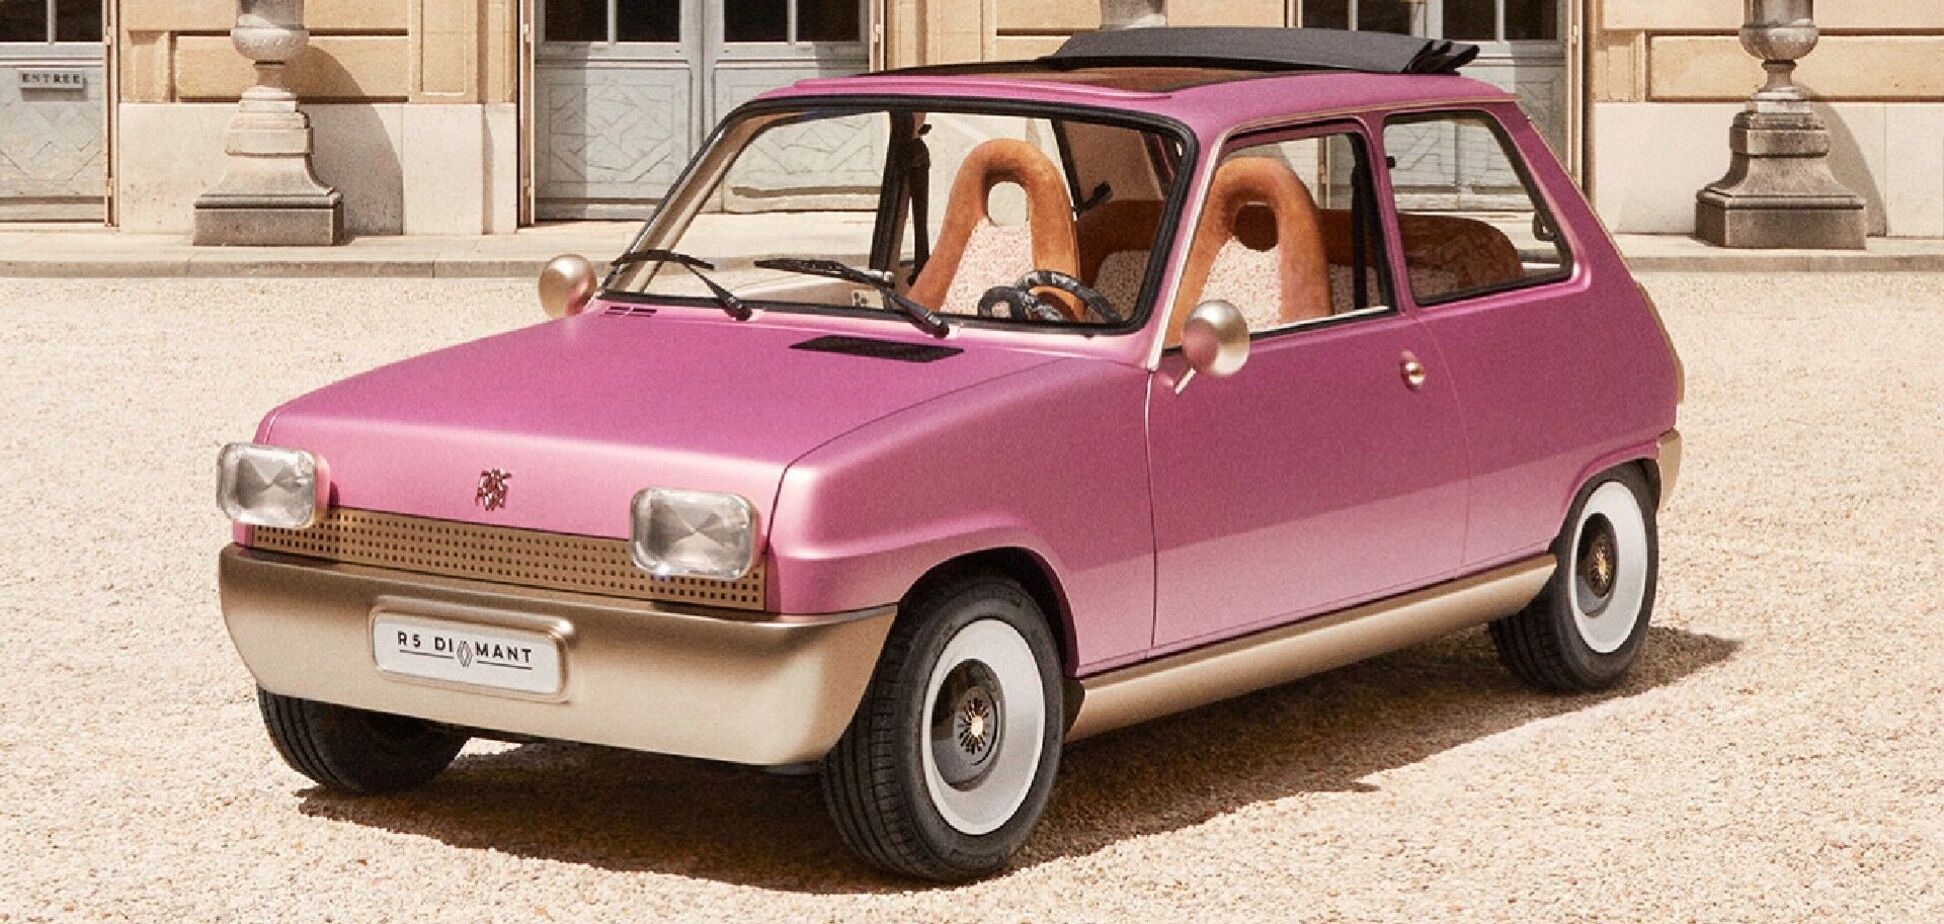 Renault создала электромод в честь 50-летия модели R5